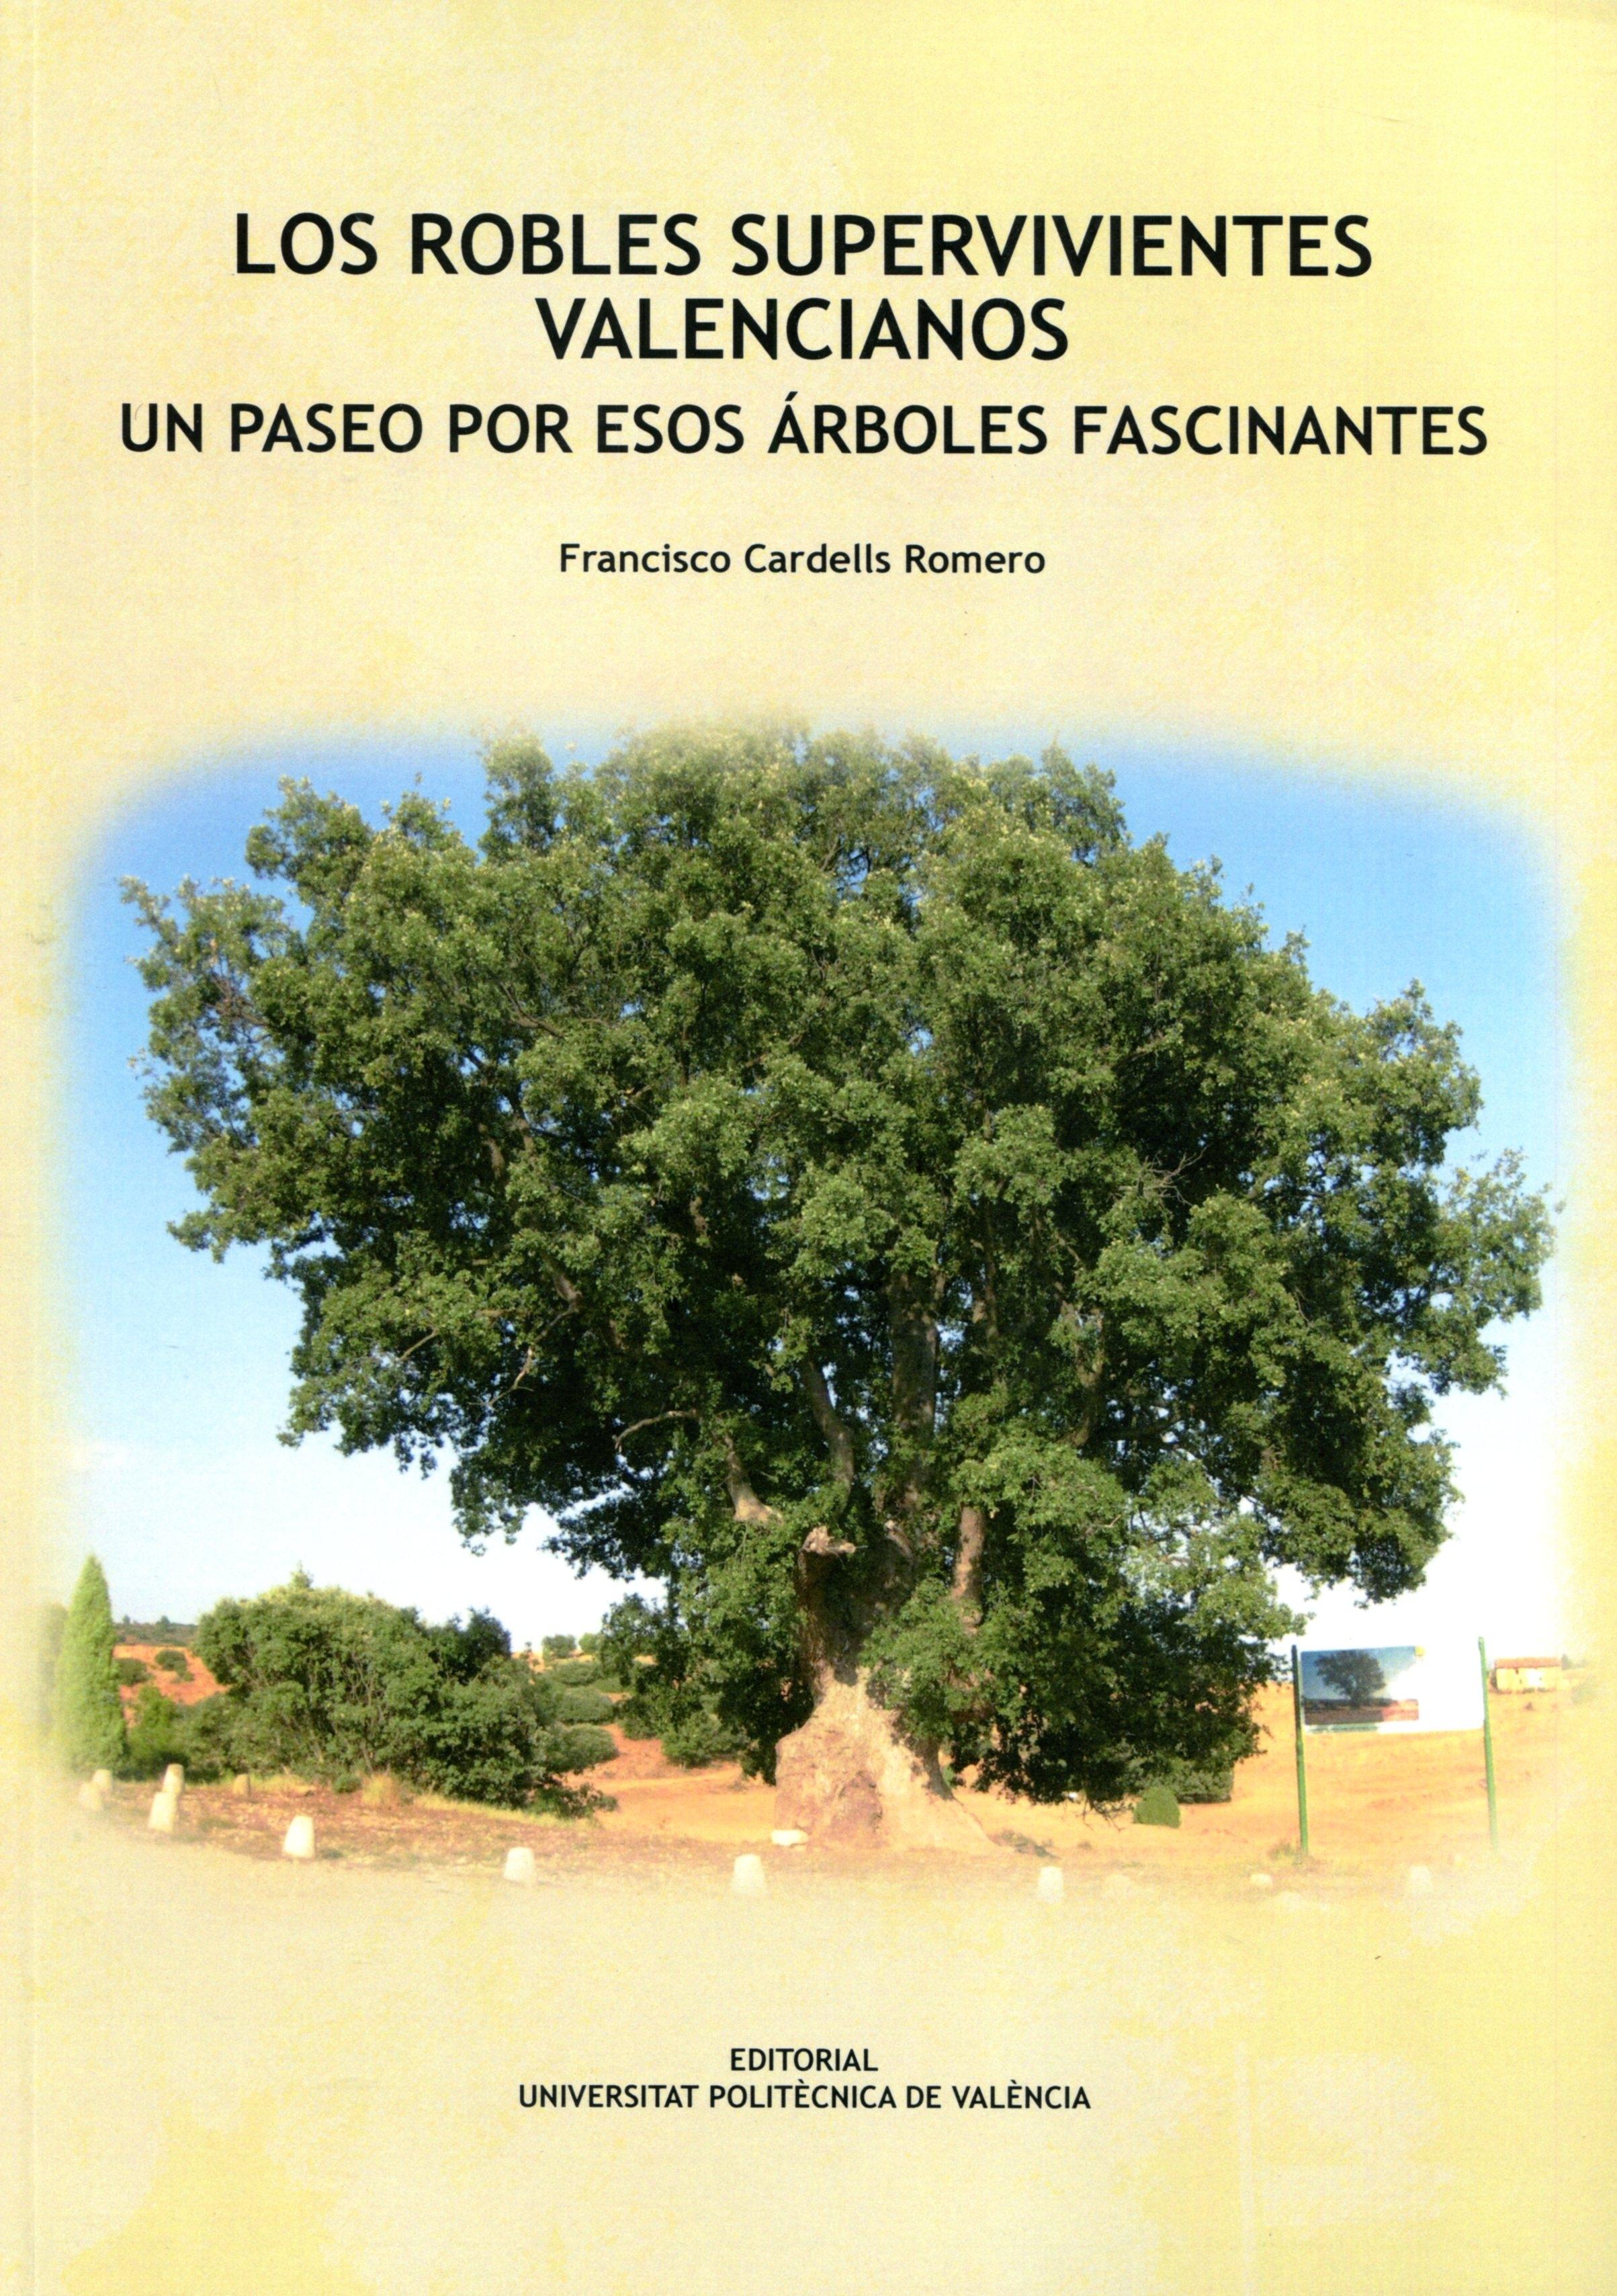 Los robles supervivientes valencianos "un paseo por esos árboles fascinantes"